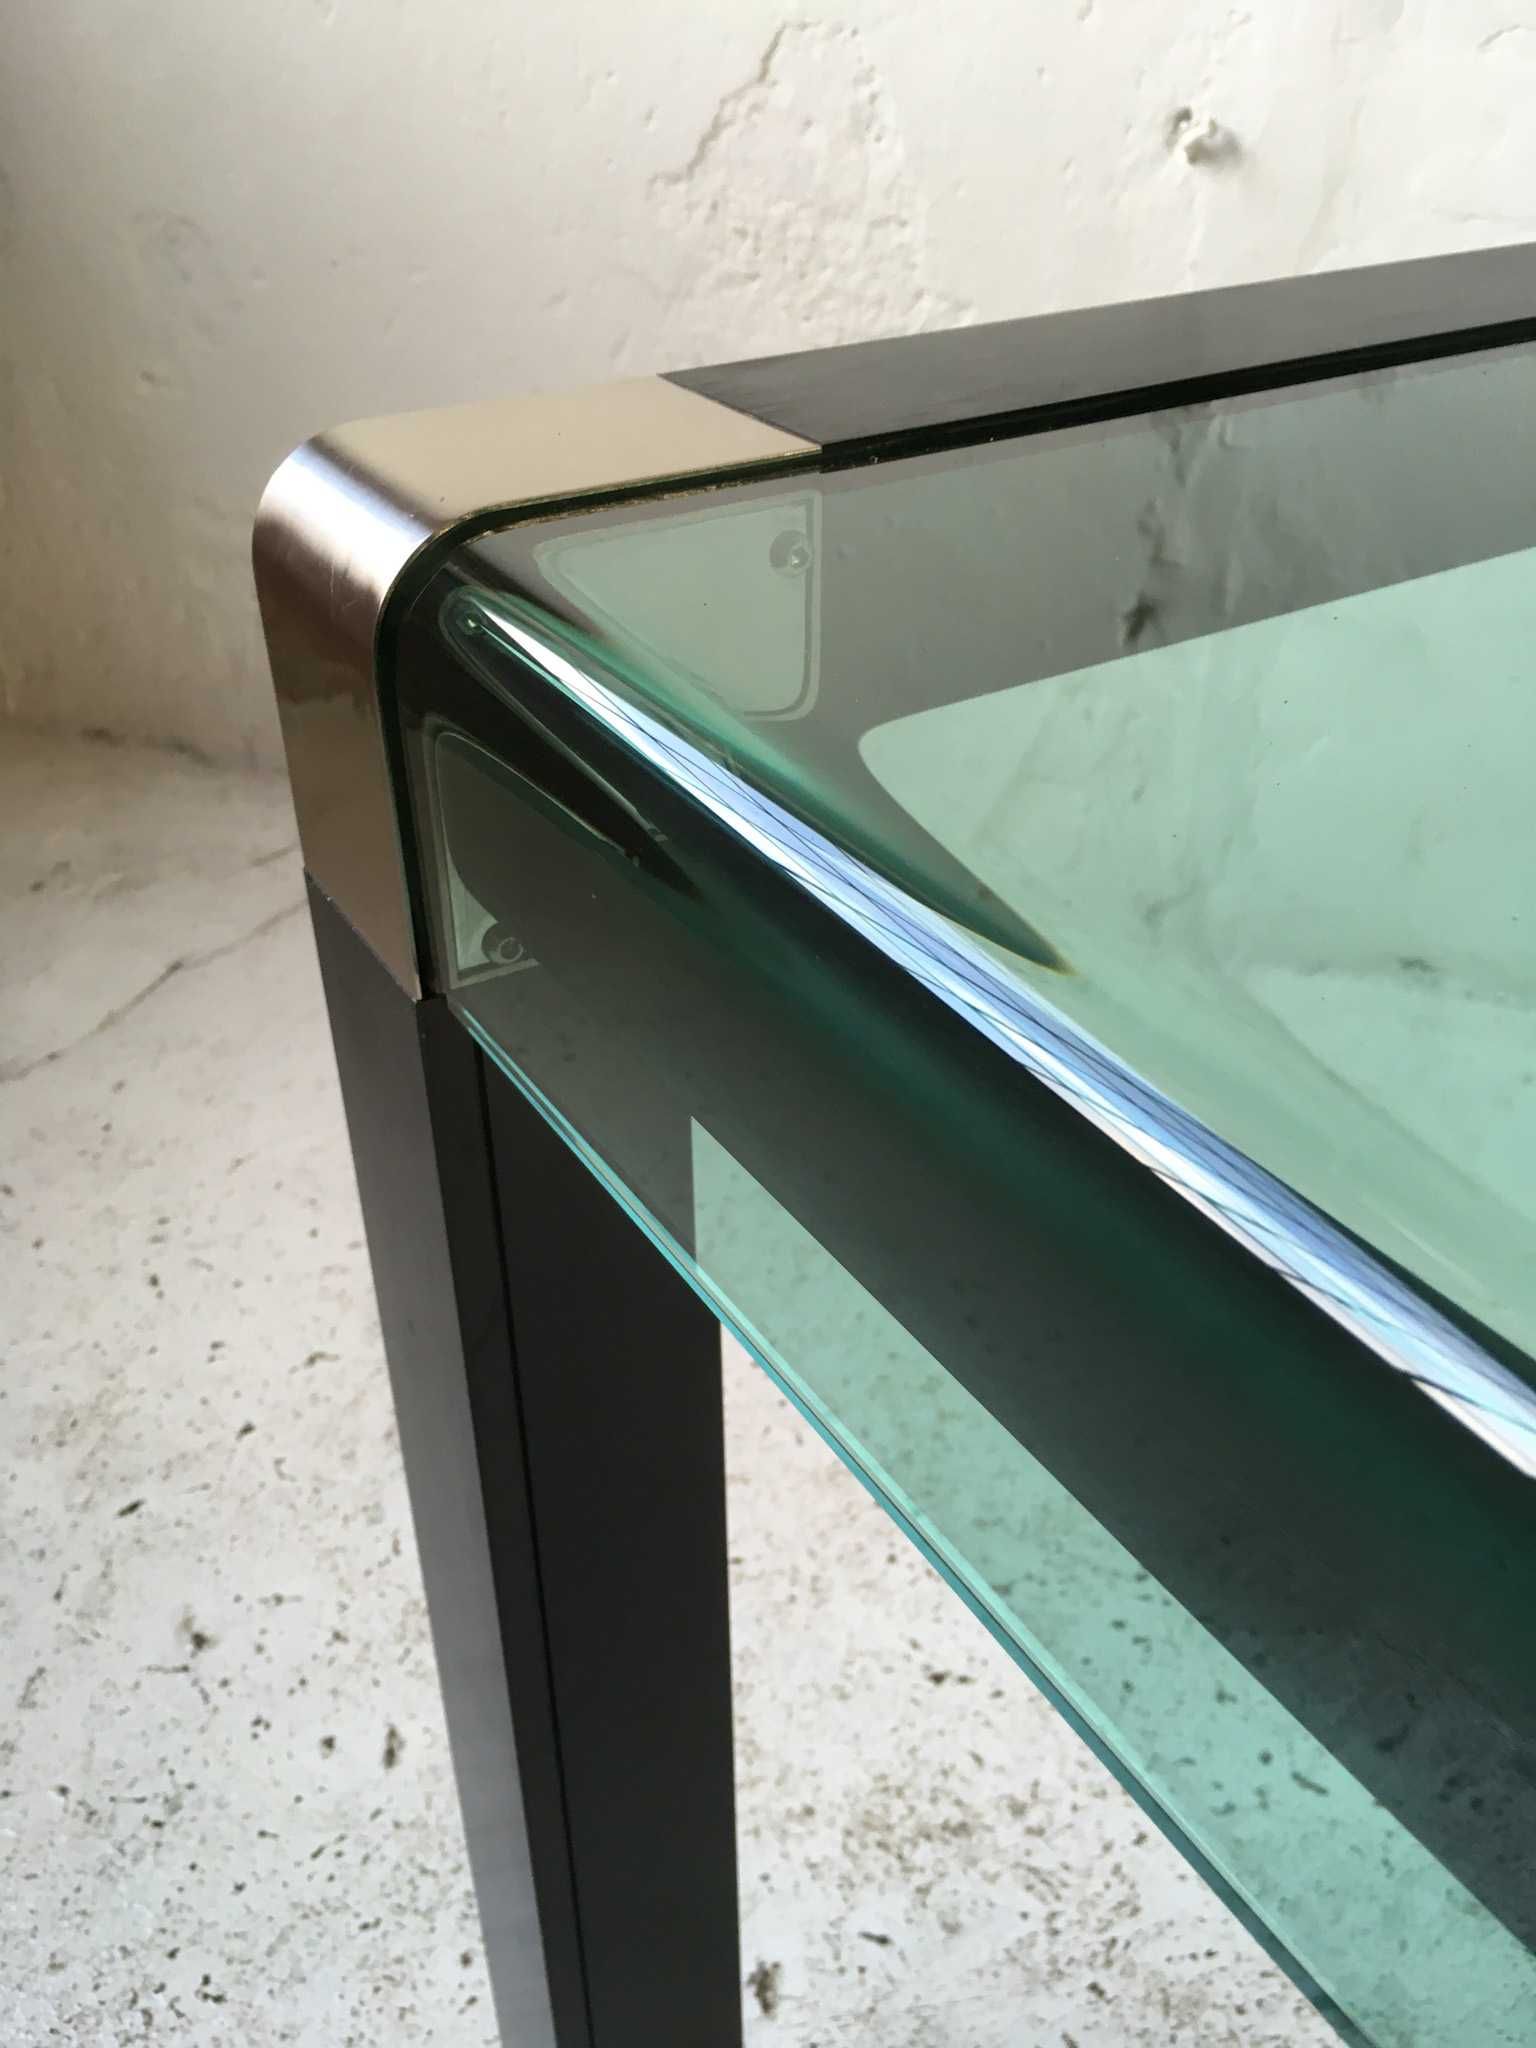 Stół aluminiowy szklany blat lata 80 90 vintage design